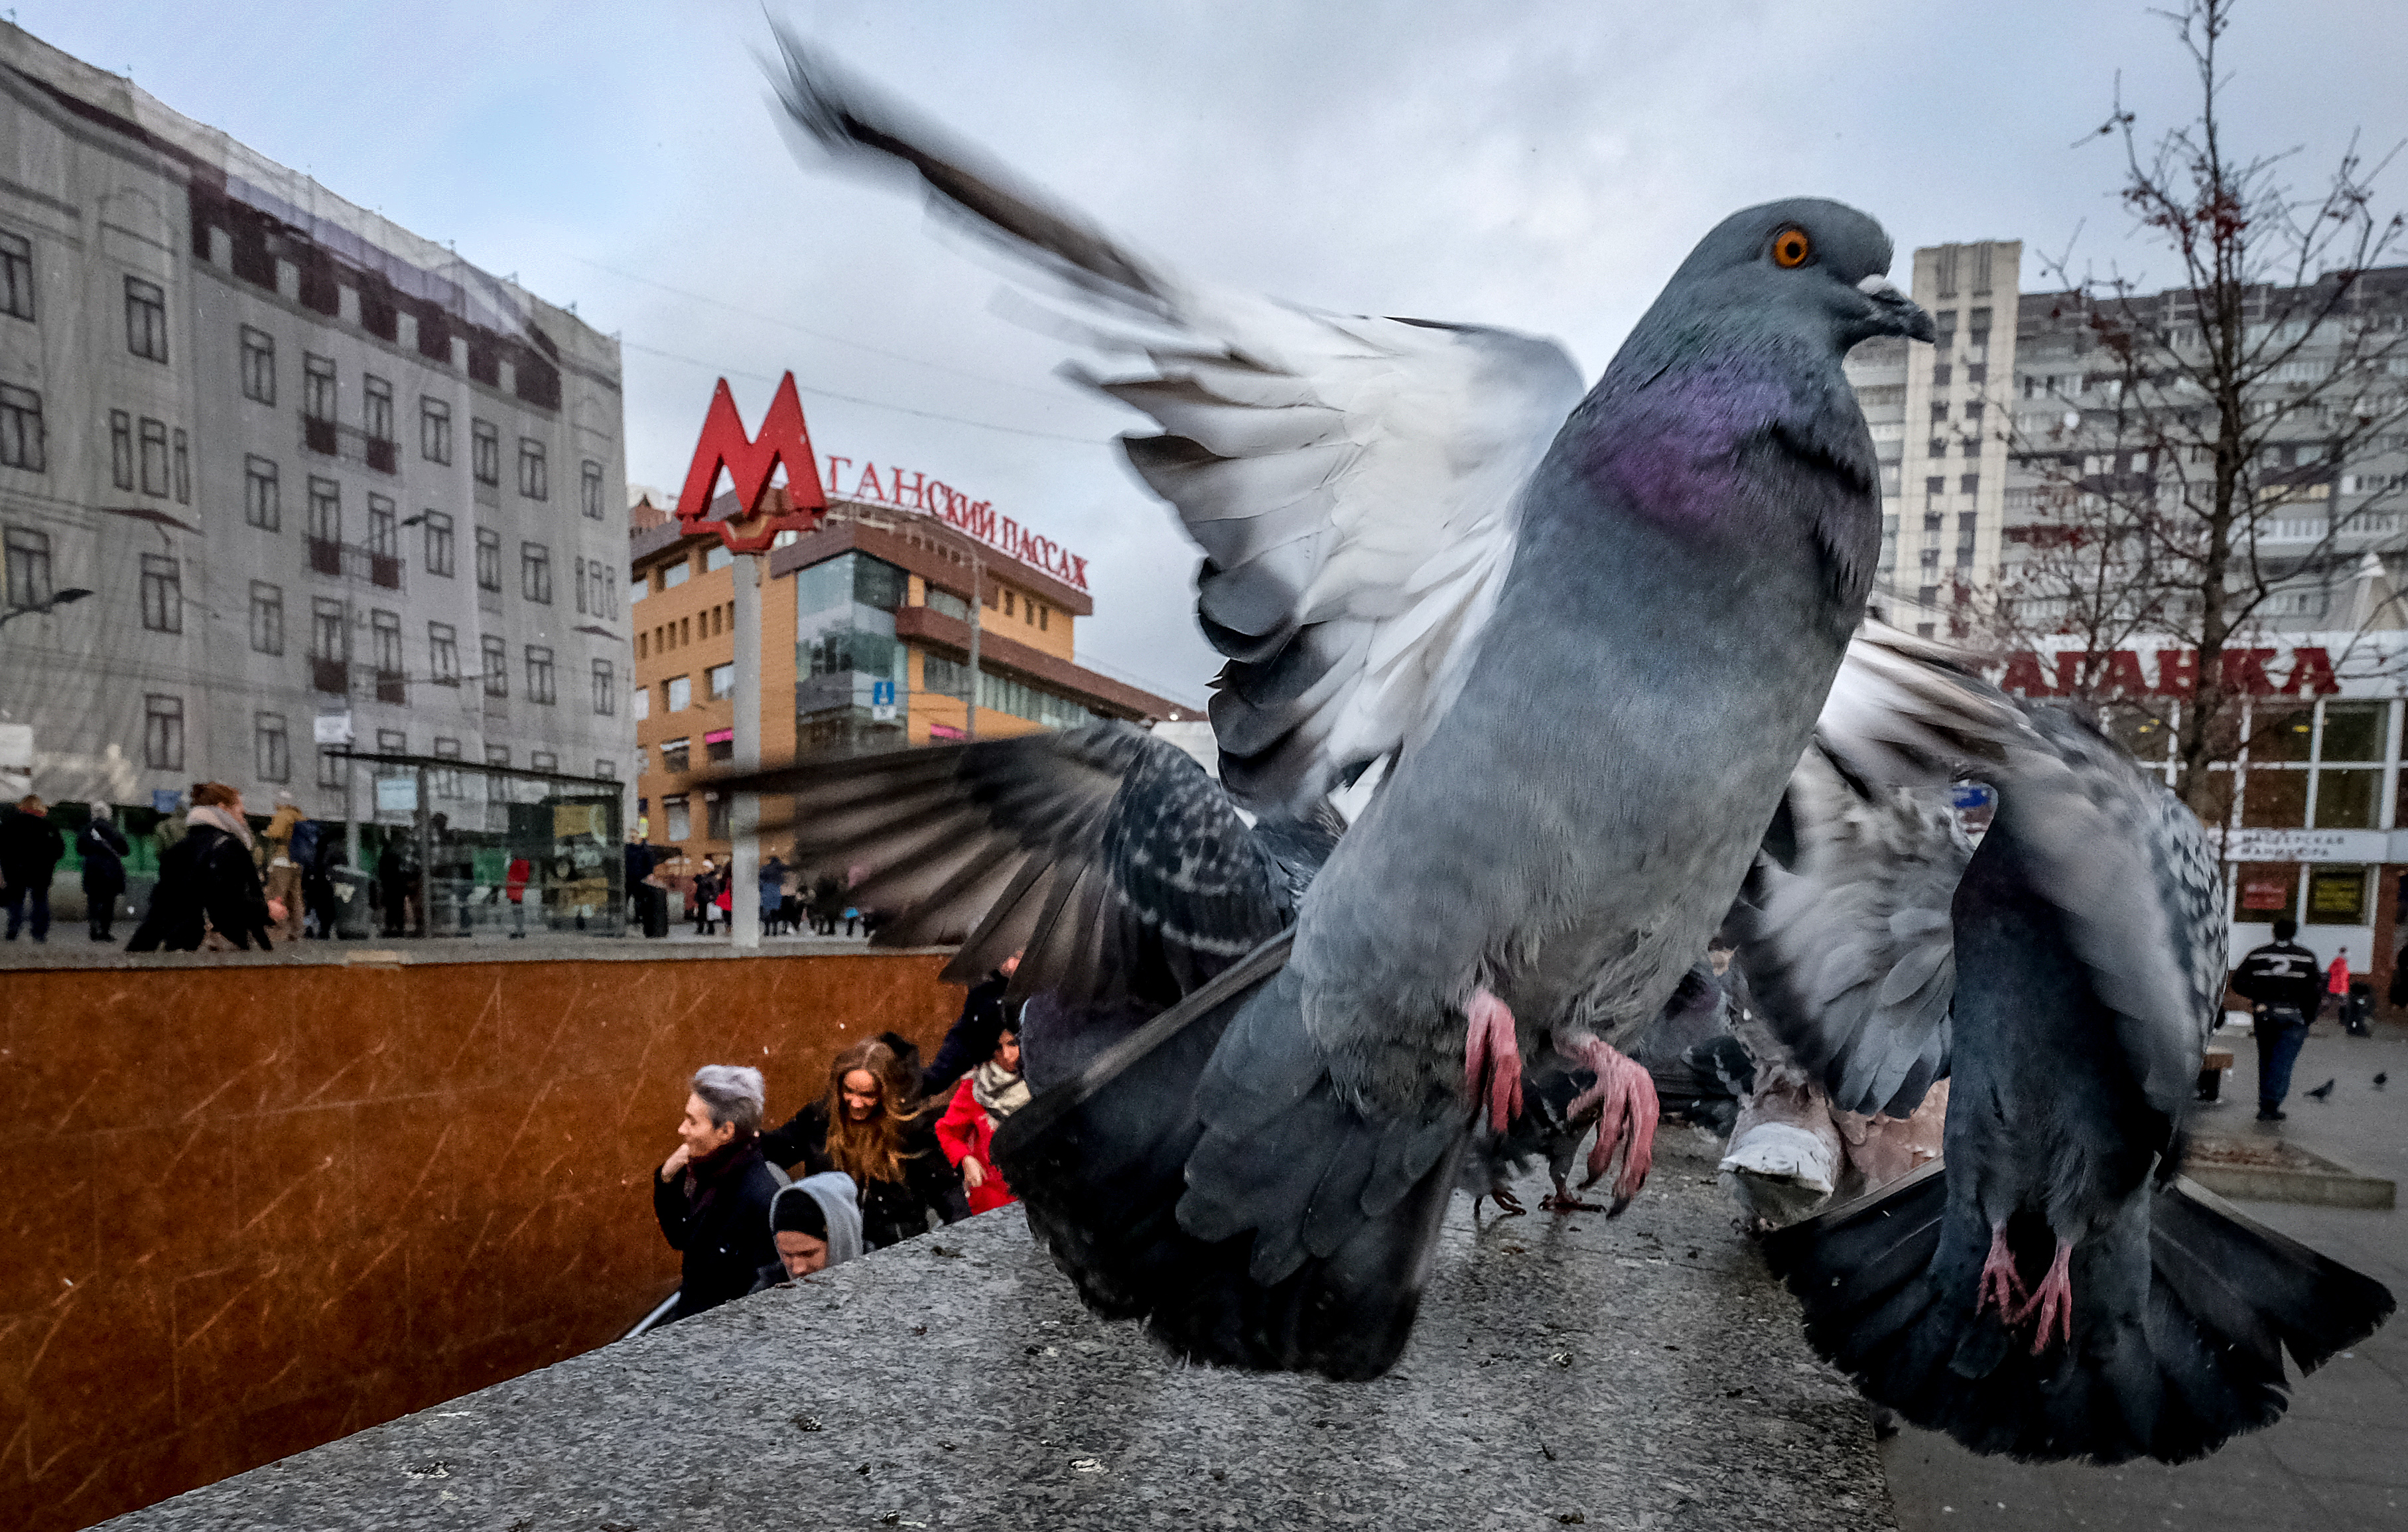 Egy spanyol város nem akar belefulladni a galambfosba, ezért kitelepítik a galambokat